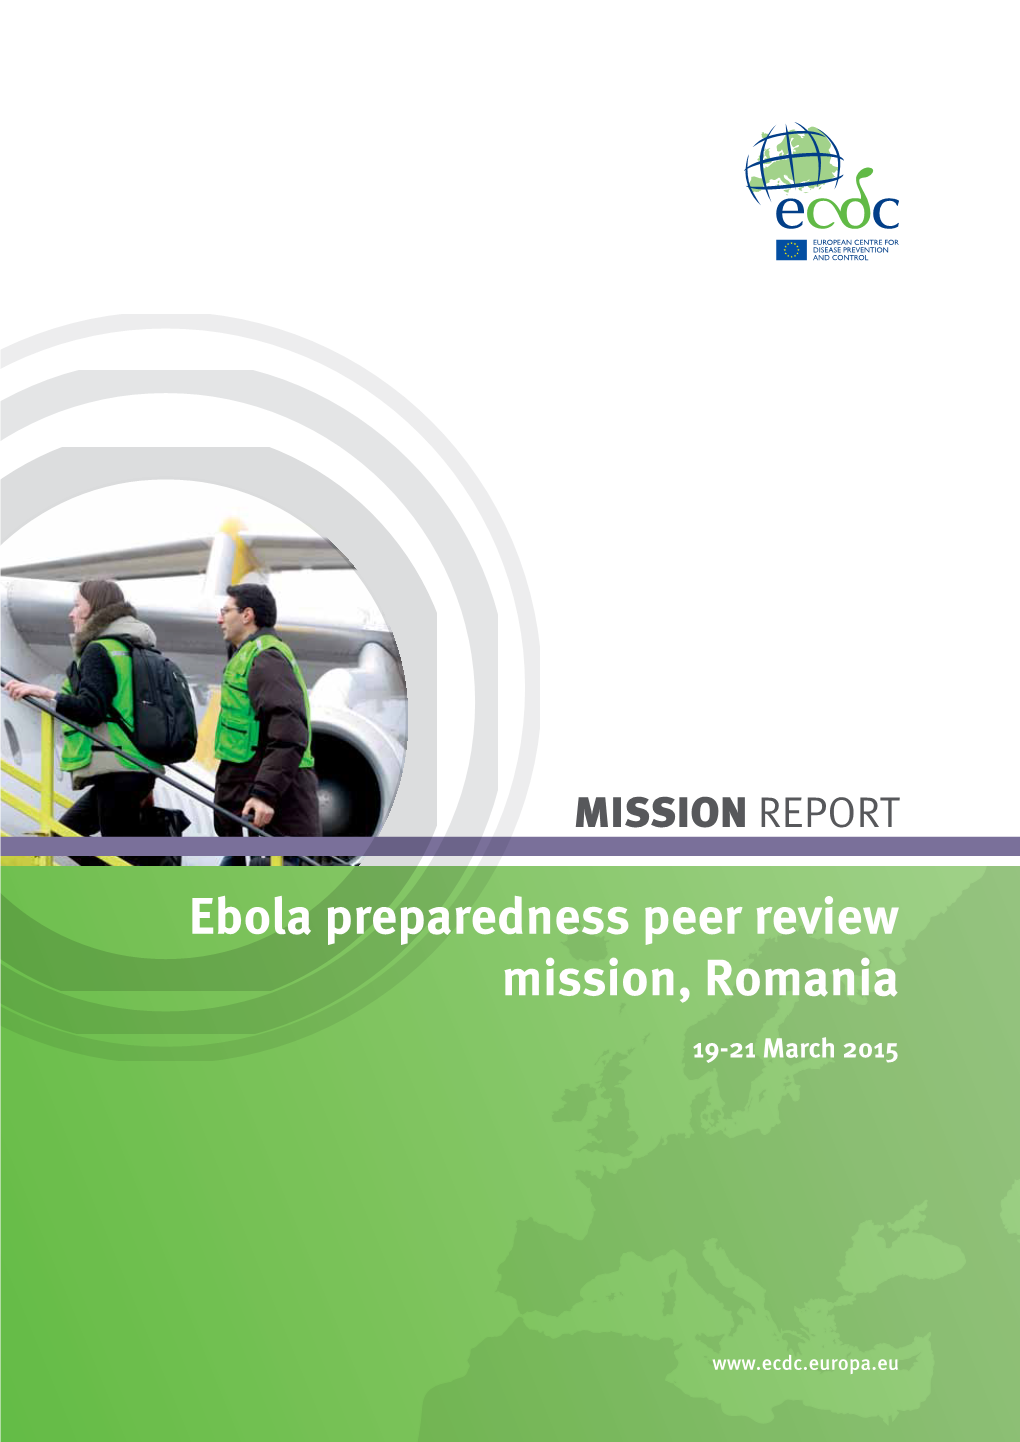 Ebola Preparedness Peer Review Mission, Romania 19-21 March 2015